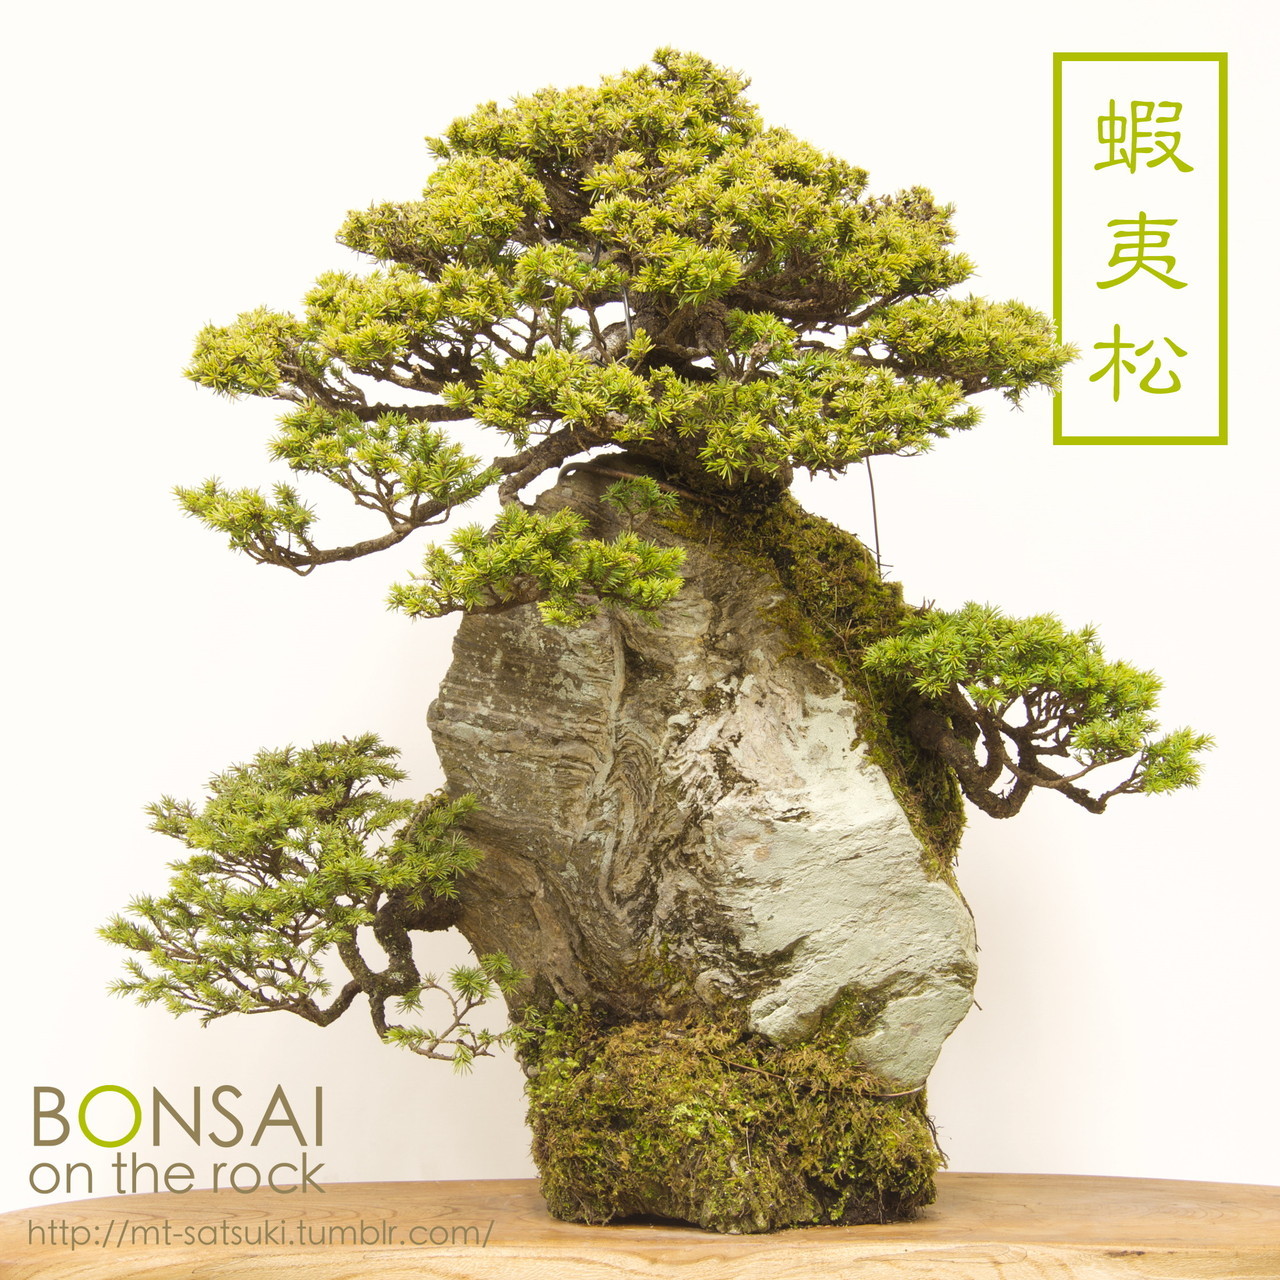 石付盆栽 bonsai on the rock • 蝦夷松（エゾマツ）の石付盆栽 ...